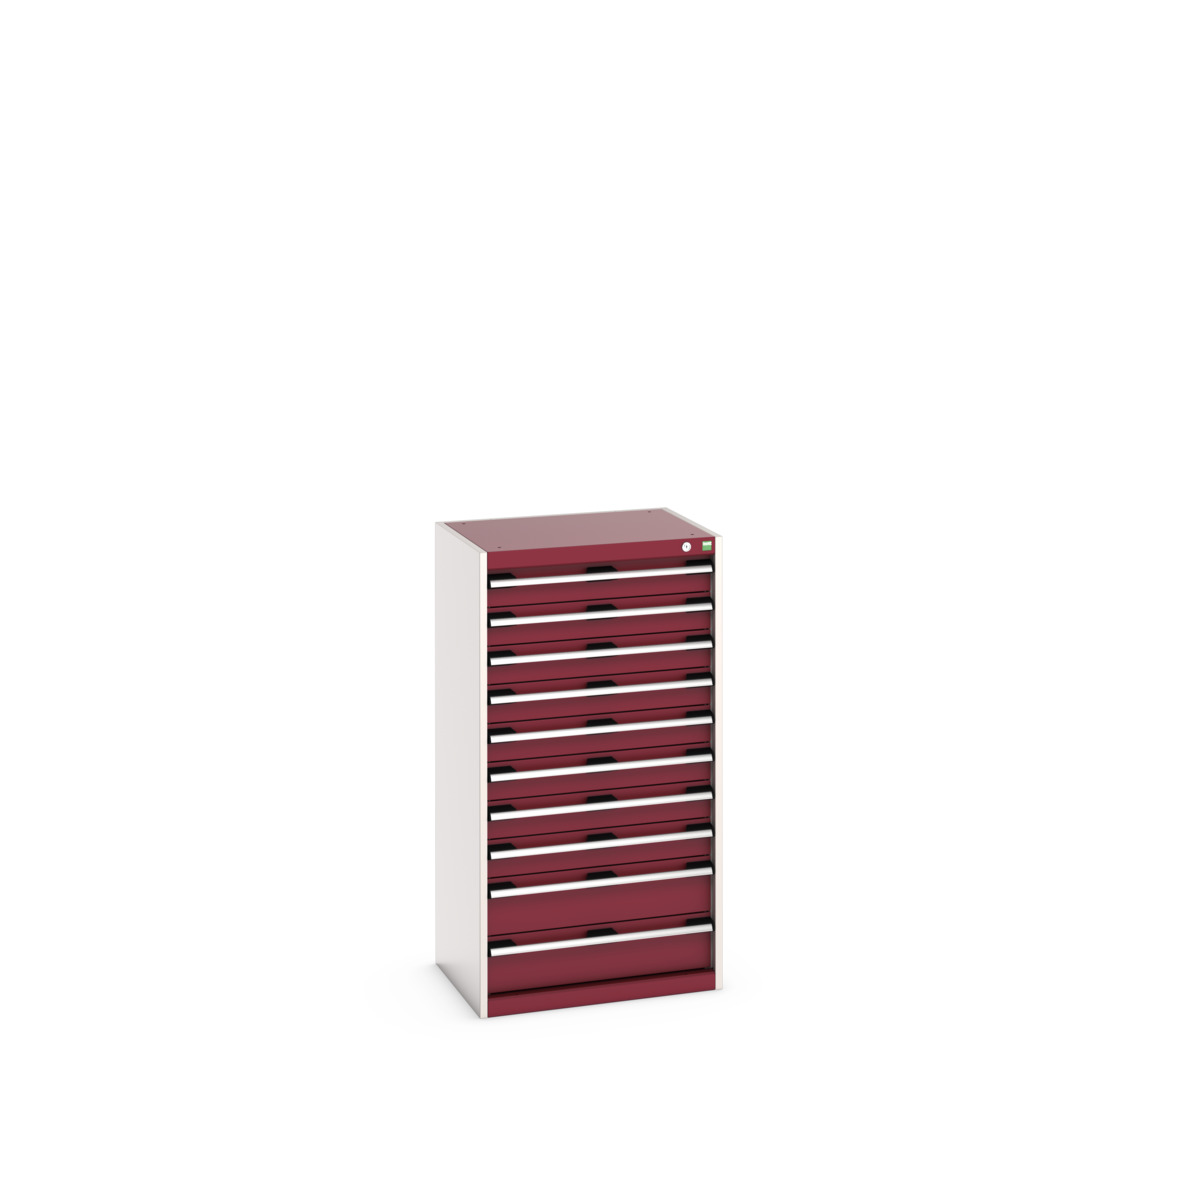 40011065.24V - cubio drawer cabinet